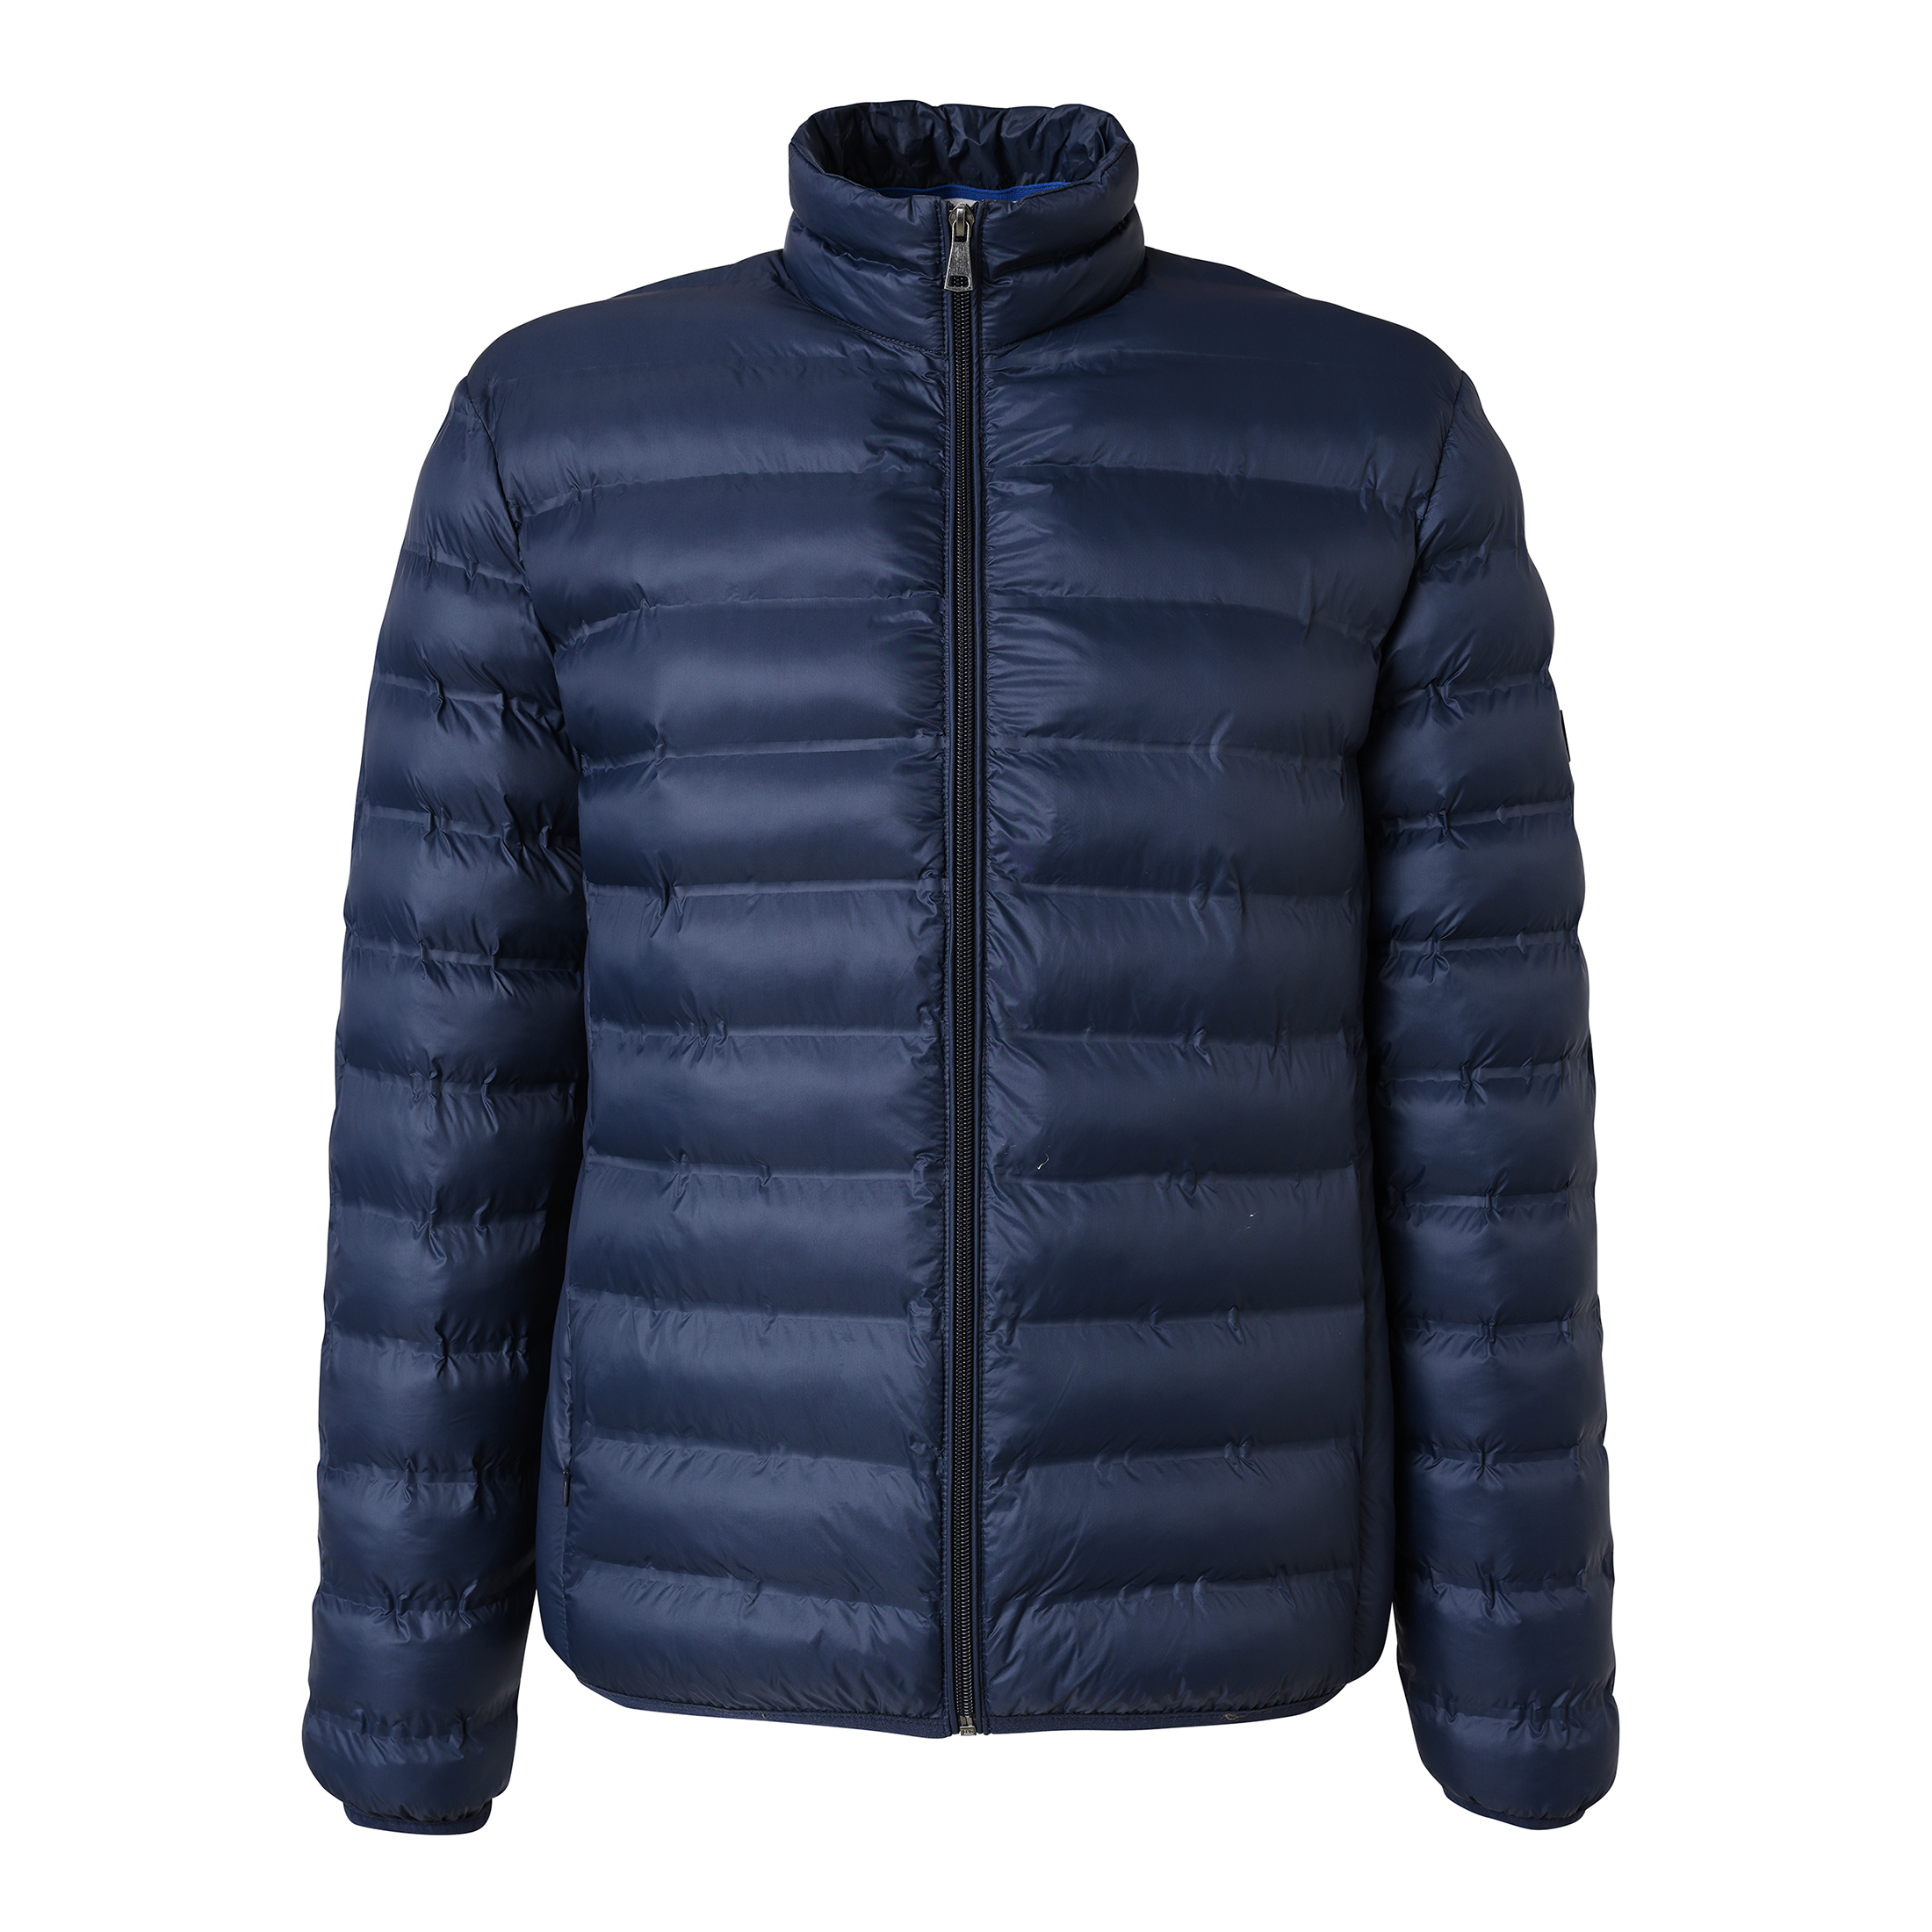 Hot Sale Men\'s Light Warm Padding Jacket with Nylon Fabric New Design Style Jacket